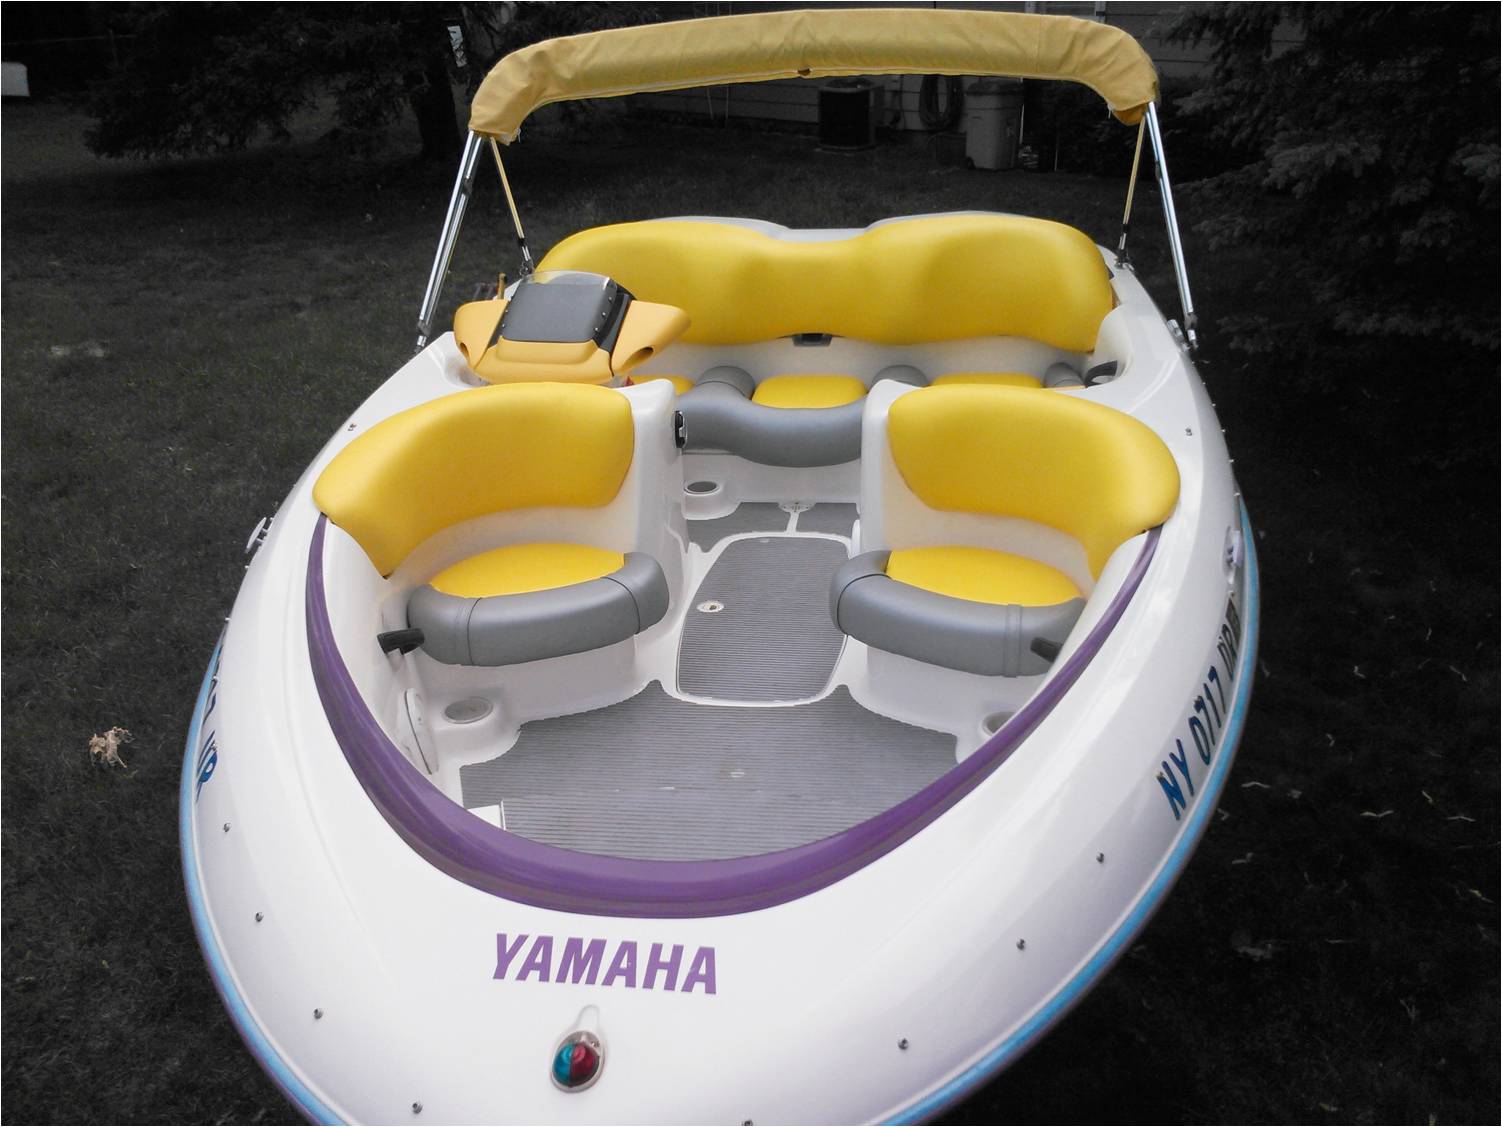 Personal watercraft seats